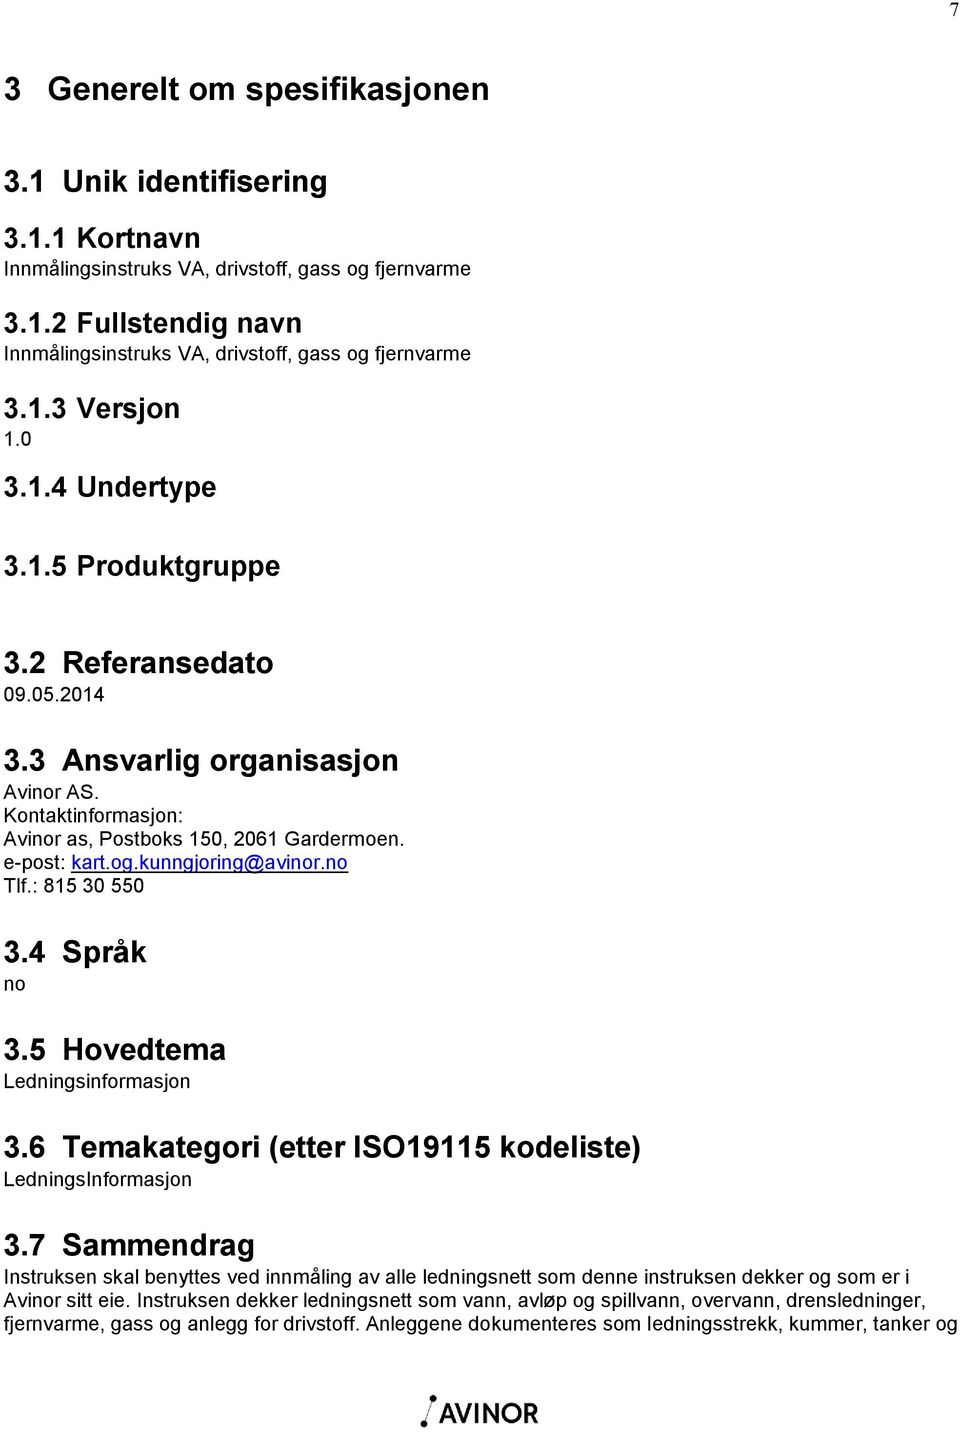 kunngjoring@avinor.no Tlf.: 815 30 550 3.4 Språk no 3.5 Hovedtema Ledningsinformasjon 3.6 Temakategori (etter ISO19115 kodeliste) LedningsInformasjon 3.